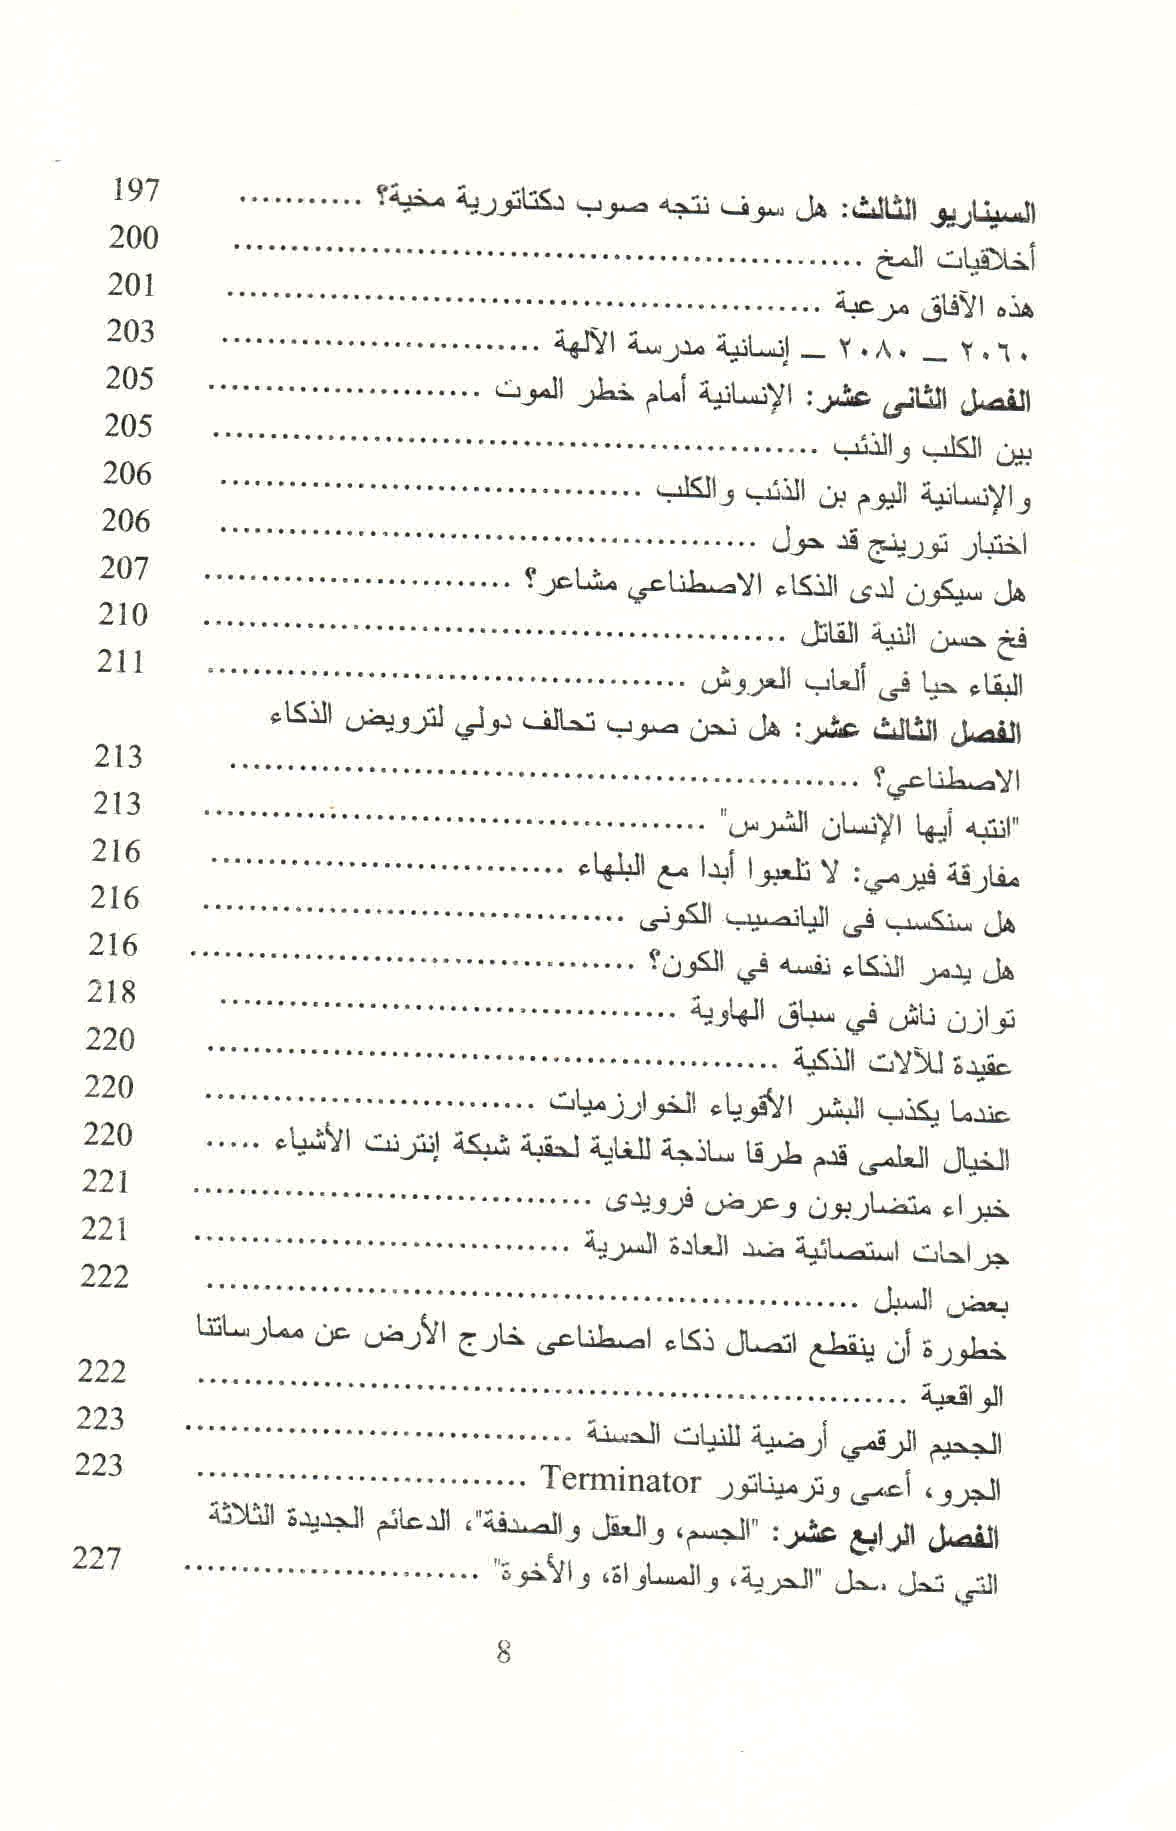 ص.83 قائمة محتويات كتاب حرب الذكاء.